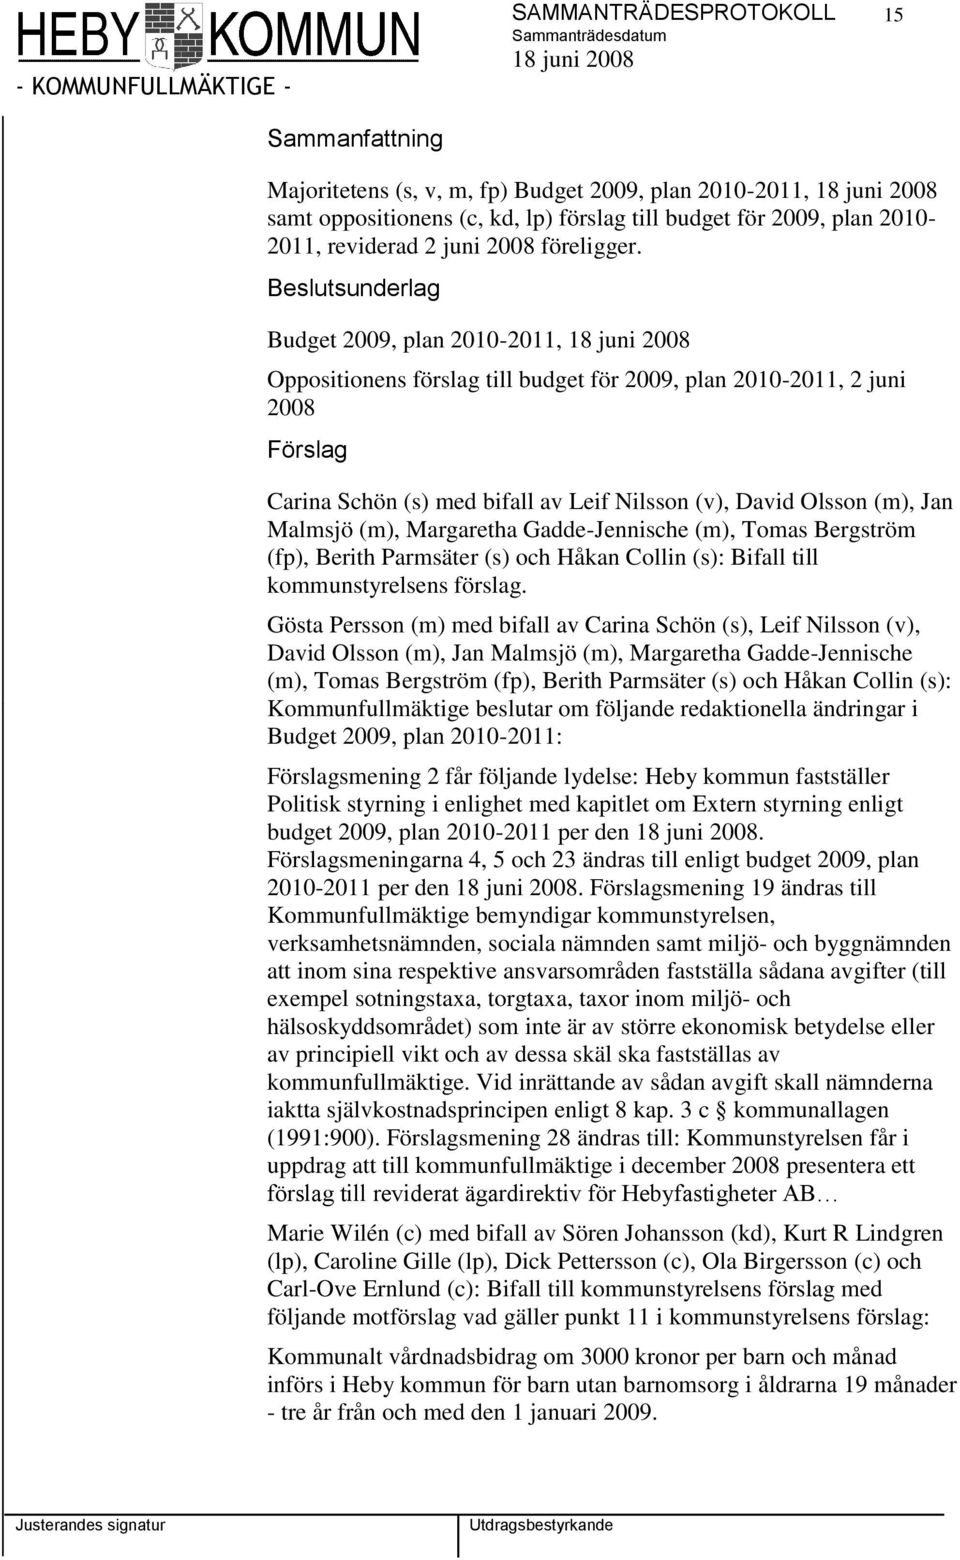 Beslutsunderlag Budget 2009, plan 2010-2011, Oppositionens förslag till budget för 2009, plan 2010-2011, 2 juni 2008 Förslag Carina Schön (s) med bifall av Leif Nilsson (v), David Olsson (m), Jan